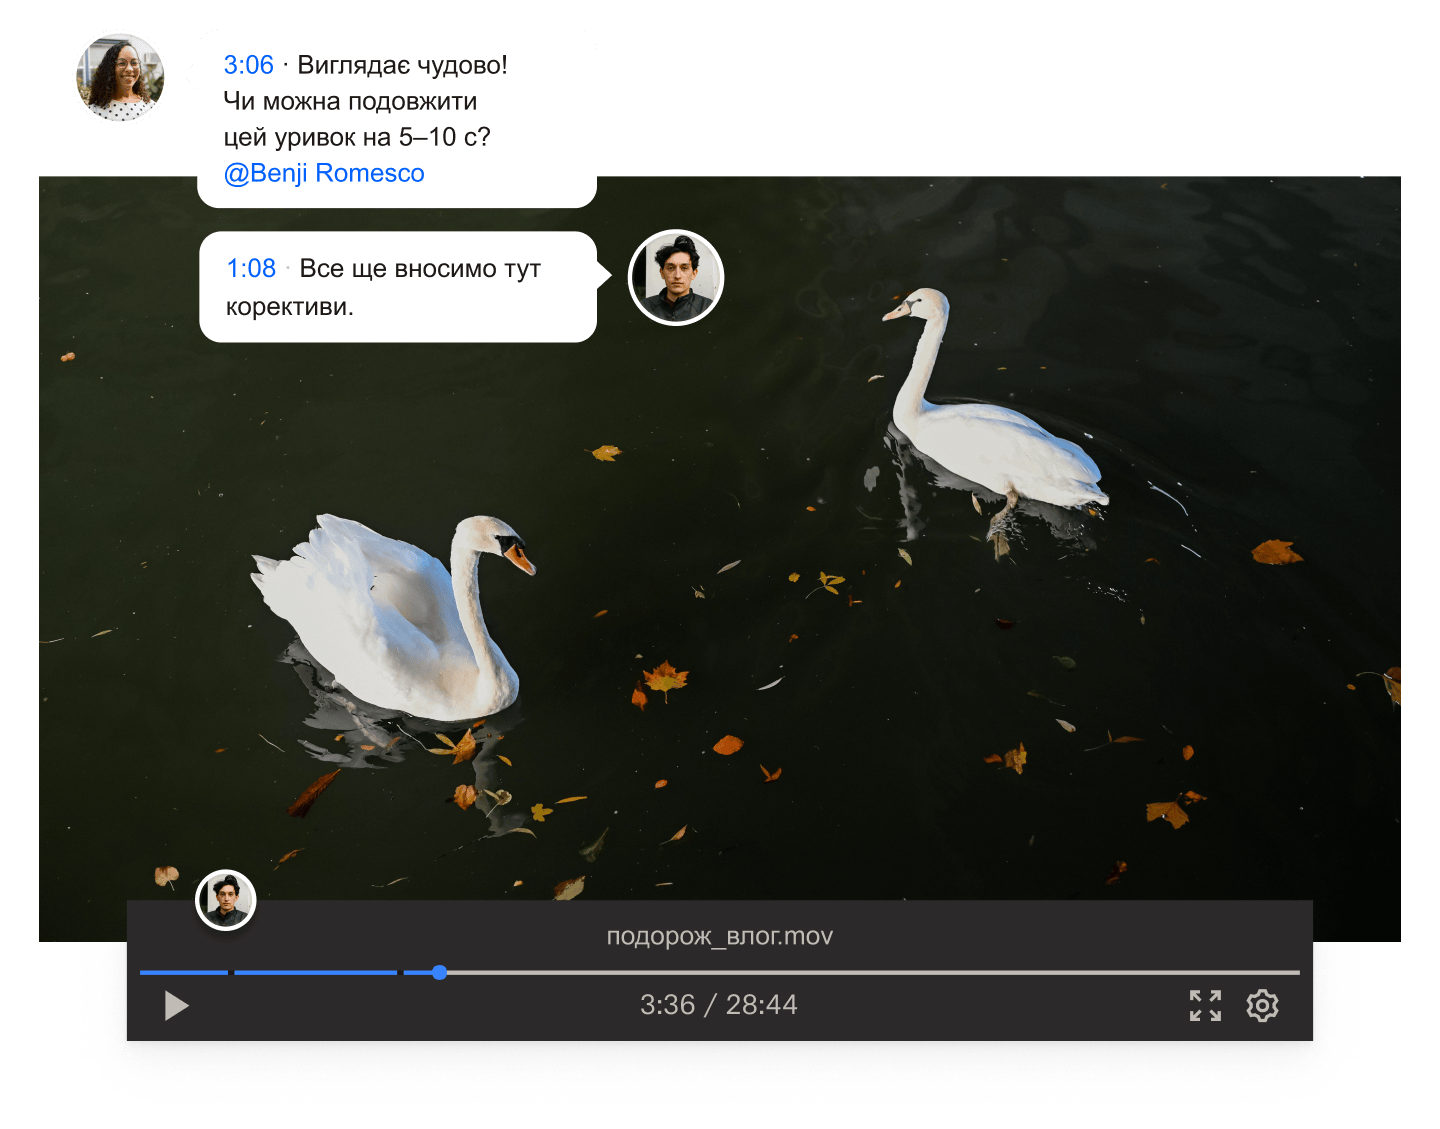 Кадр із відео двох лебедів, що плавають у воді, з накладеними на відеозапис коментарями із позначкою часу